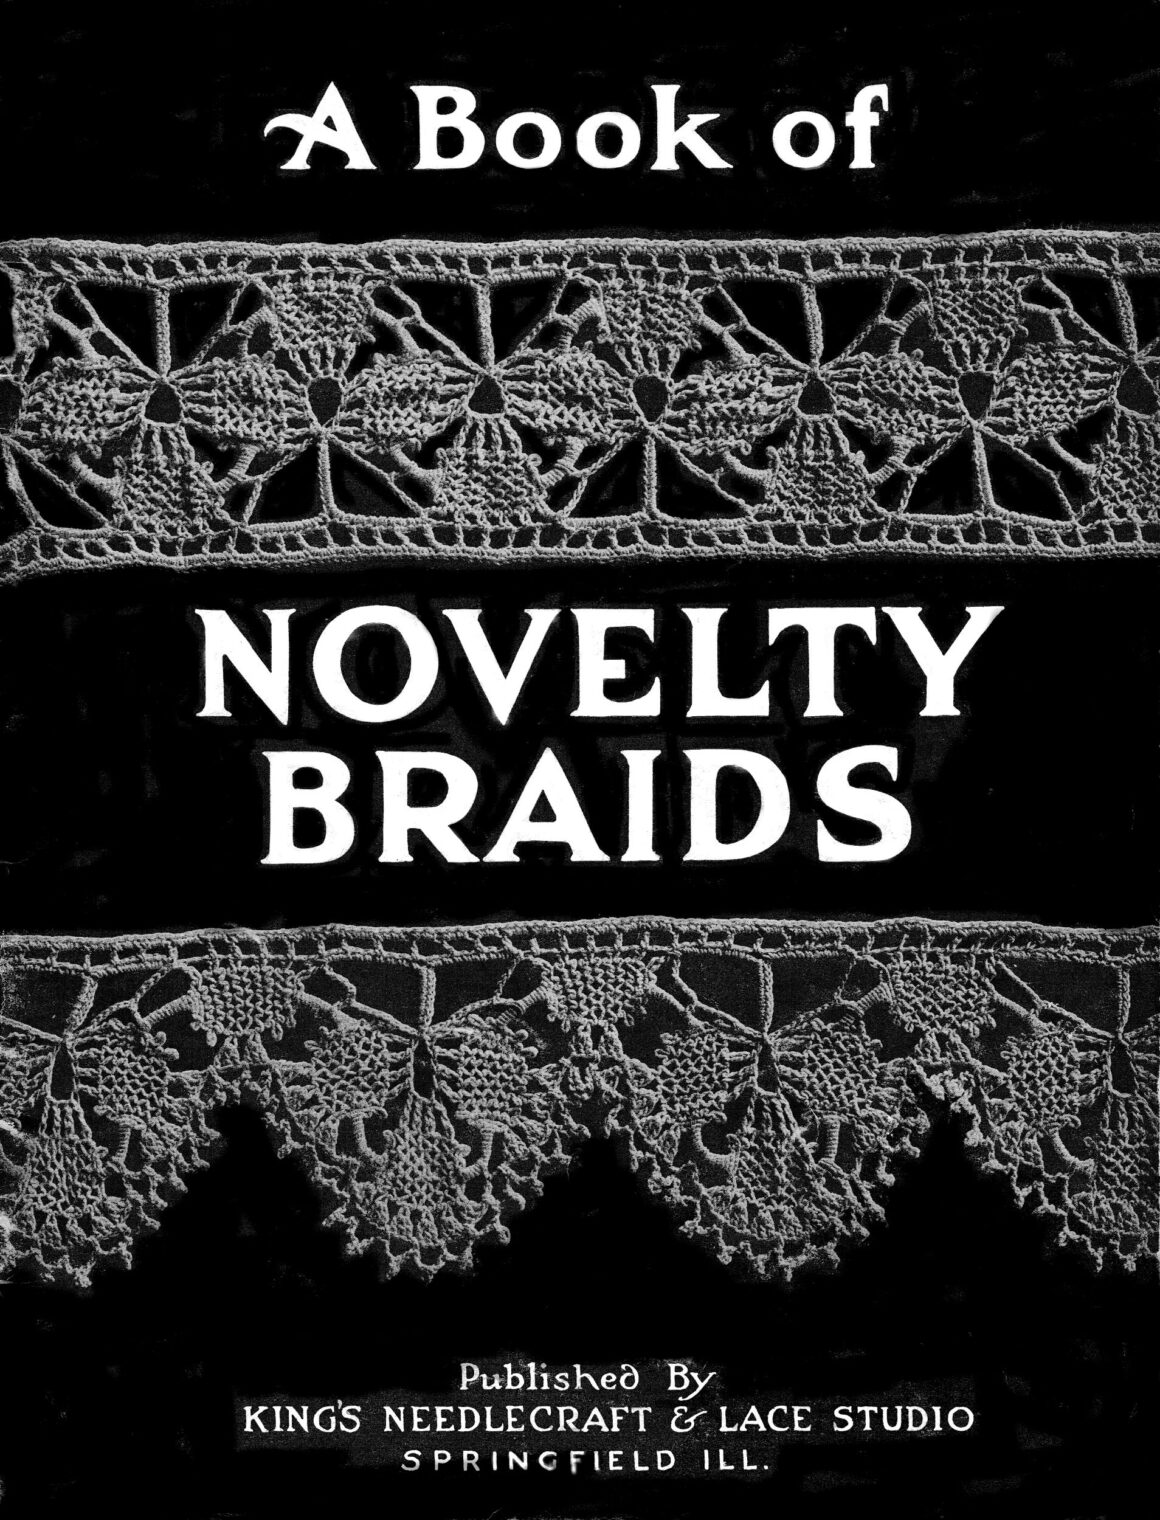 00 A Book of Novelty Braids